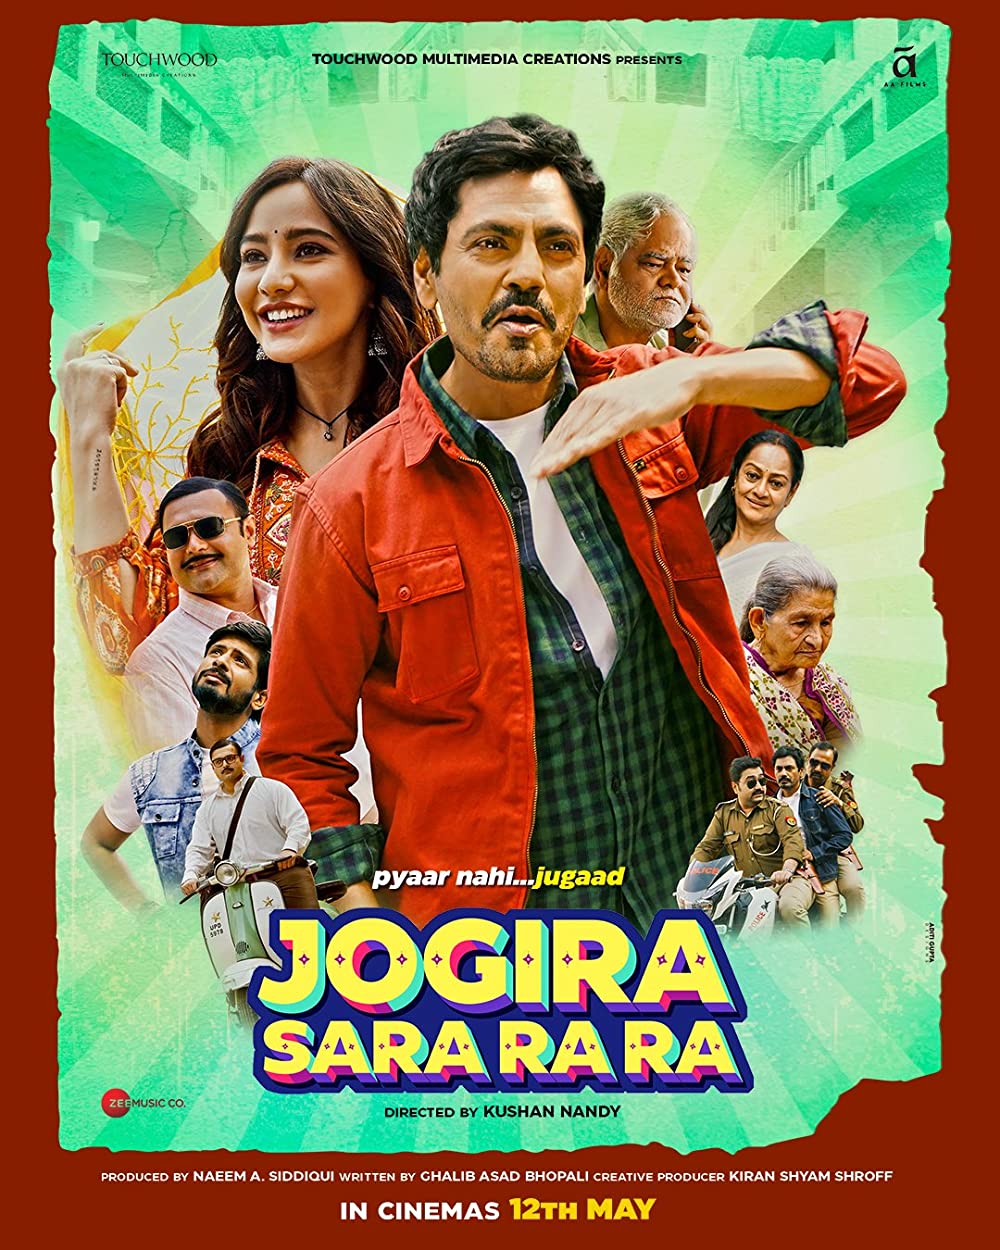 Jogira Sara Ra Ra Movie Review | Jogira Sara Ra Ra Filmy Rating 2023